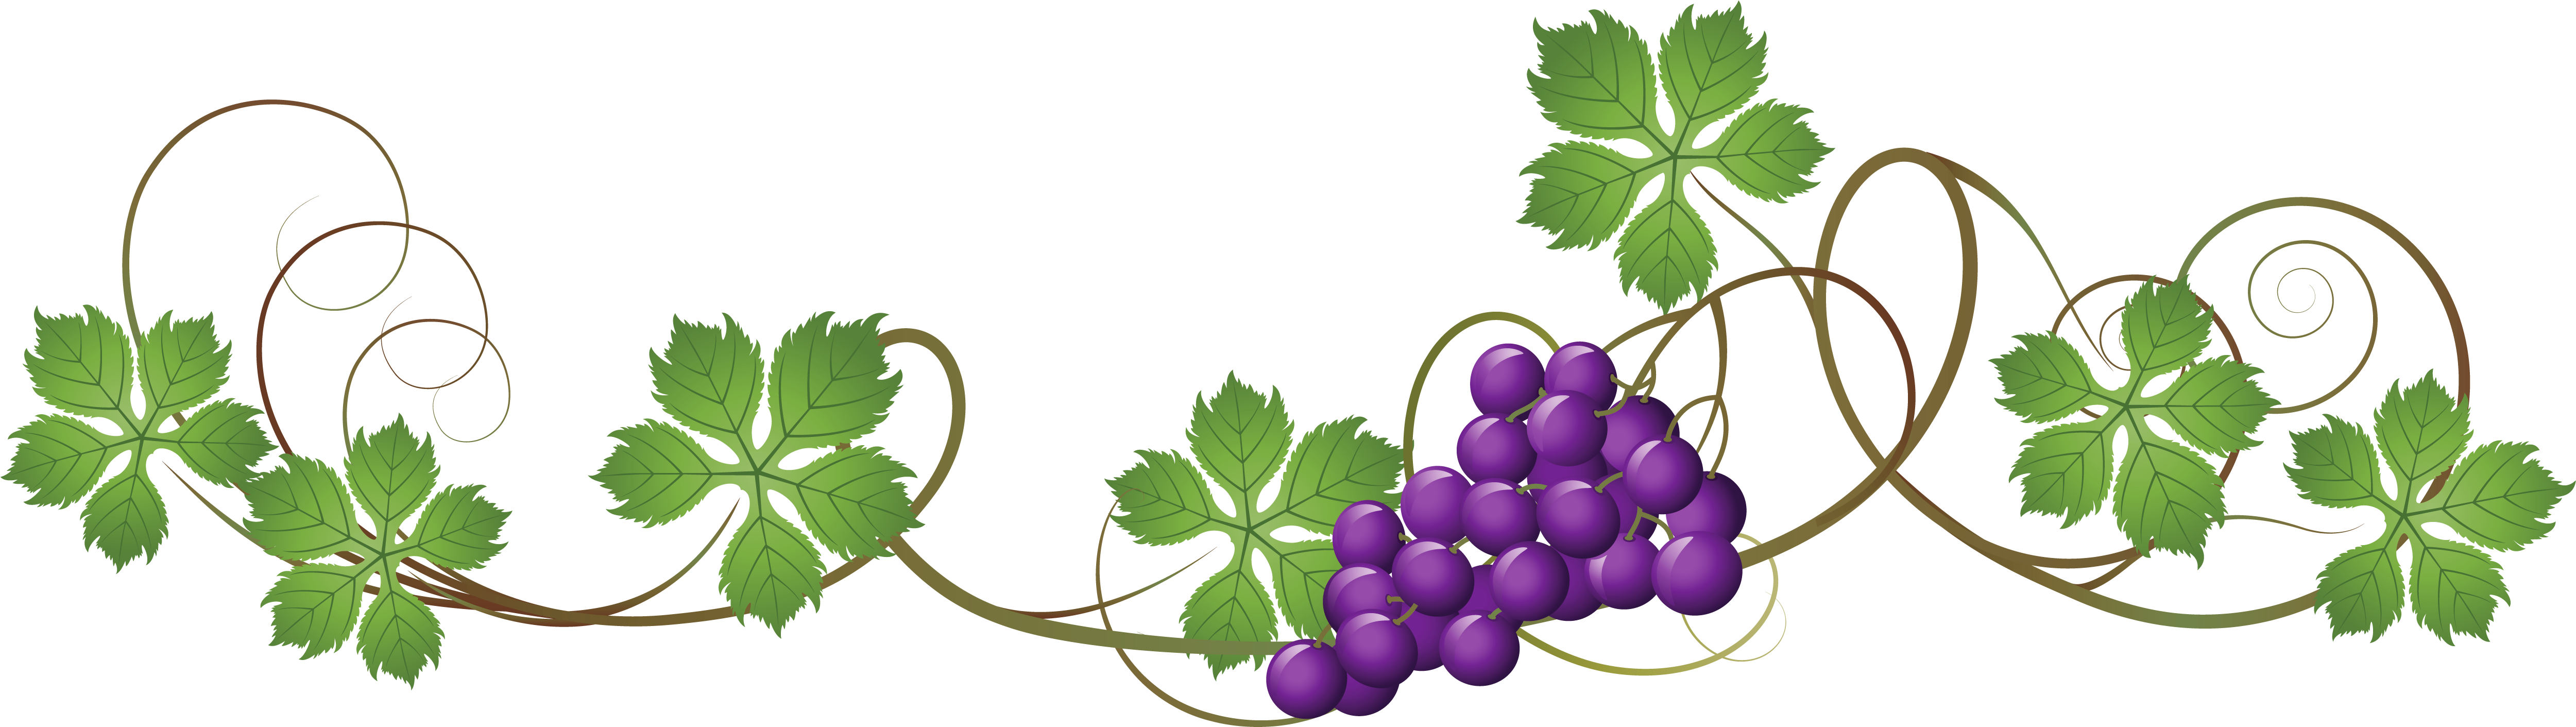 Vine Decoration Png Picture Grapes Vines Transparent Background